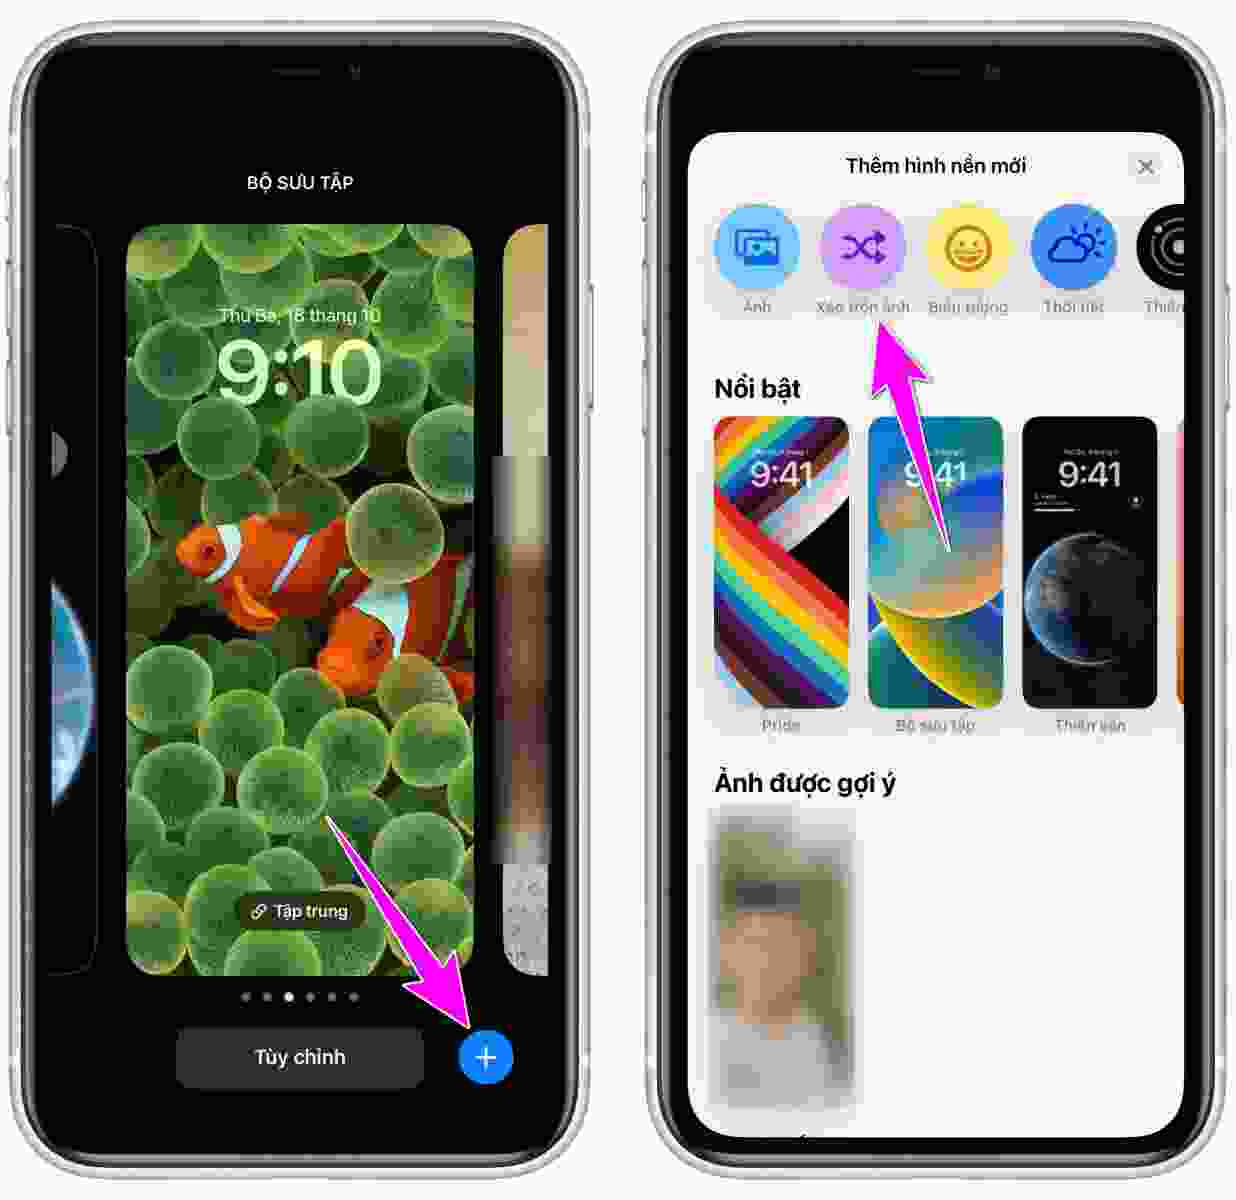 Muốn thay đổi hình nền màn hình khóa trên thiết bị iOS? Nhận ngay sự trợ giúp của chúng tôi với hình ảnh mô tả cách đổi hình nền màn hình khóa đơn giản và nhanh chóng. Khám phá cách làm mới màn hình của mình và tạo ra cái nhìn mới mẻ cho điện thoại của mình ngay!